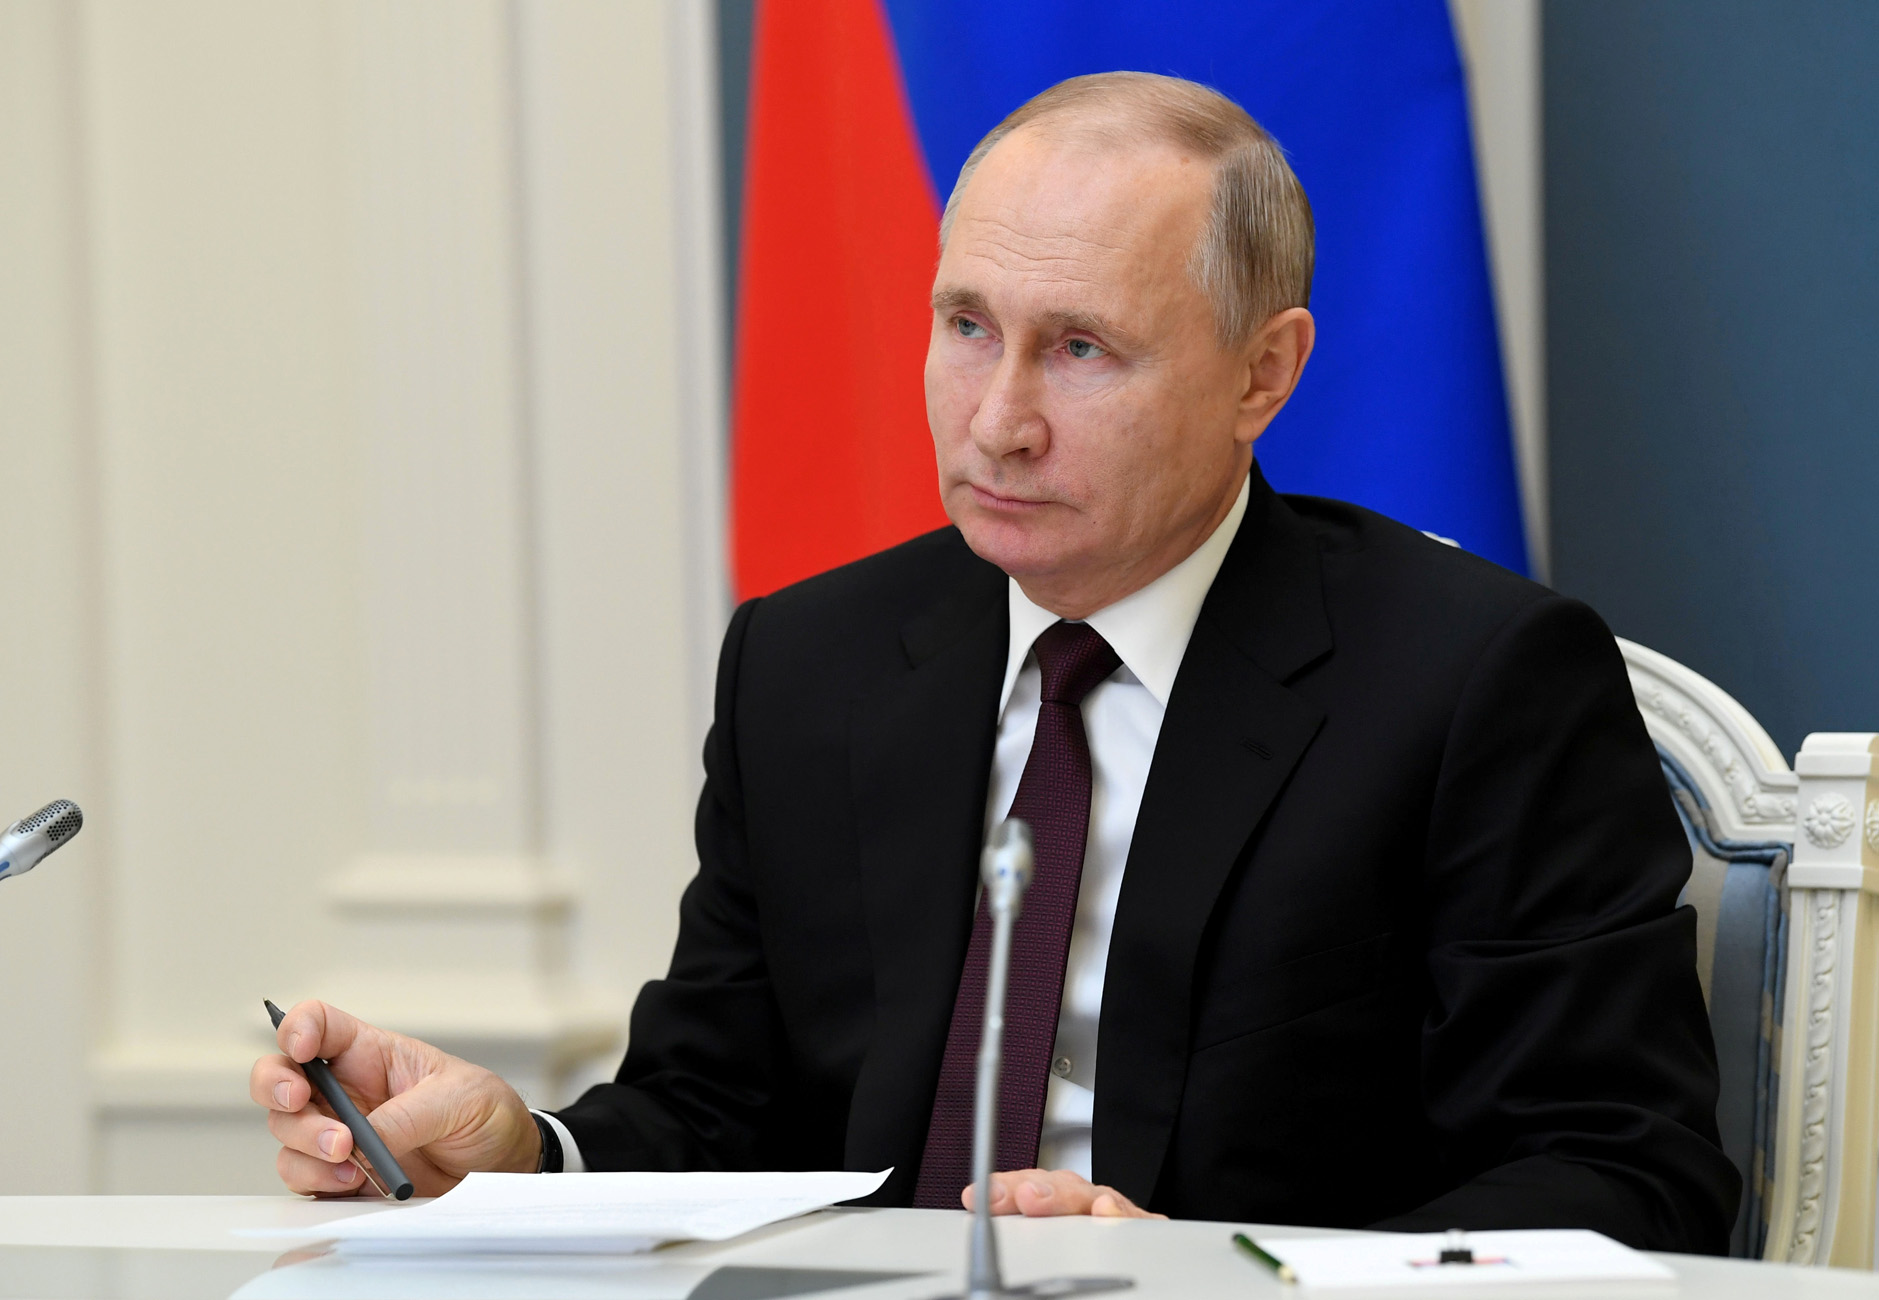 Συγχαρητήριο μήνυμα του Βλαντιμίρ Πούτιν στην Πρόεδρο της Δημοκρατίας Κατερίνα Σακελλαροπούλου